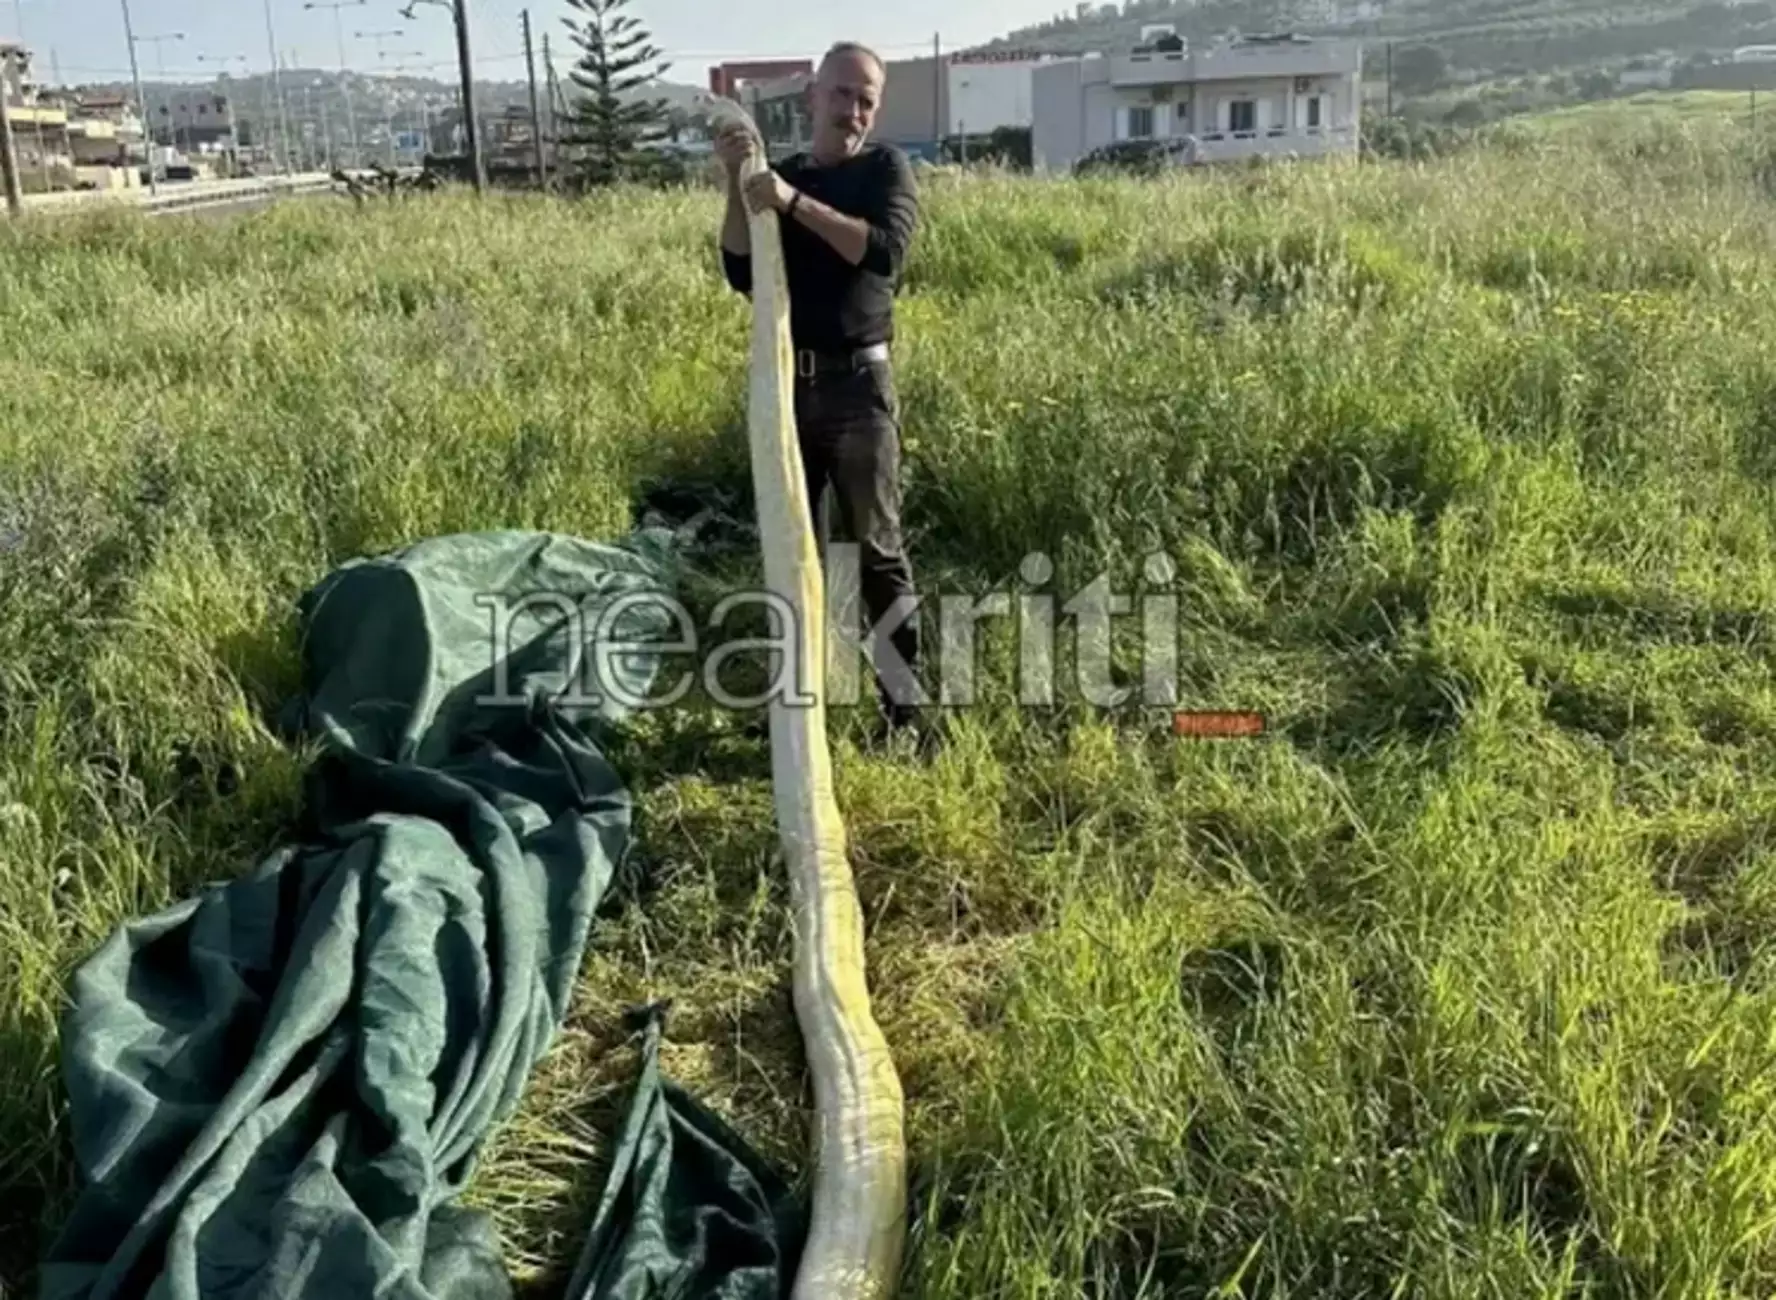 Ηράκλειο: Πύθωνας 5 μέτρων σε χωράφι! - Viral οι εικόνες με το μεγάλο φίδι